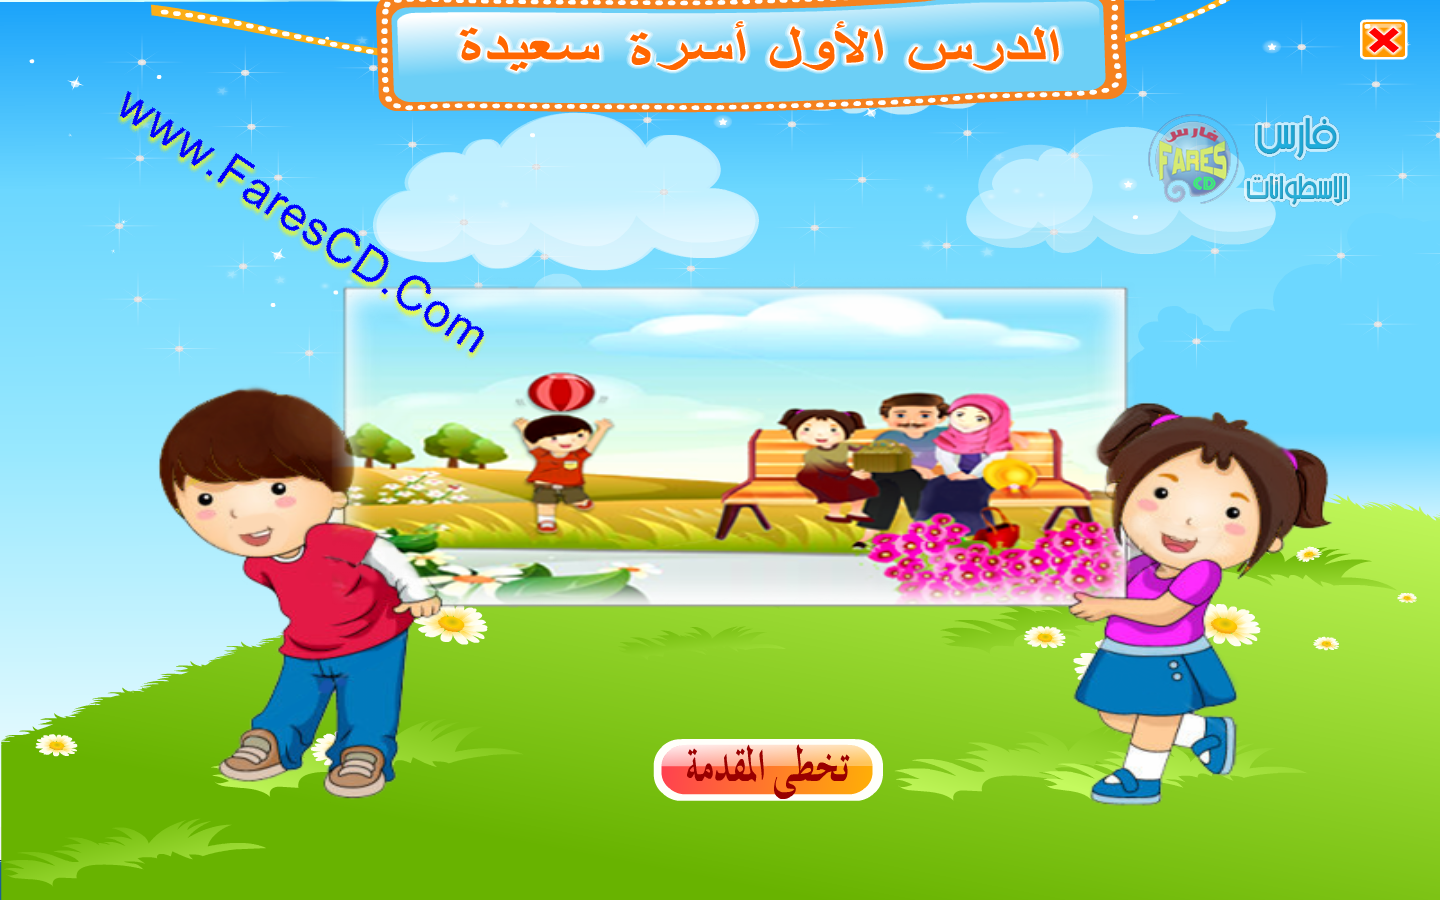 اسطوانة تعليم منهج اللغة العربية 2014 للصف الأول الإبتدائى ( ترم 2 ) من وزارة التربية والتعليم المصرية للتحميل برابط واحد مباشر  1_wm